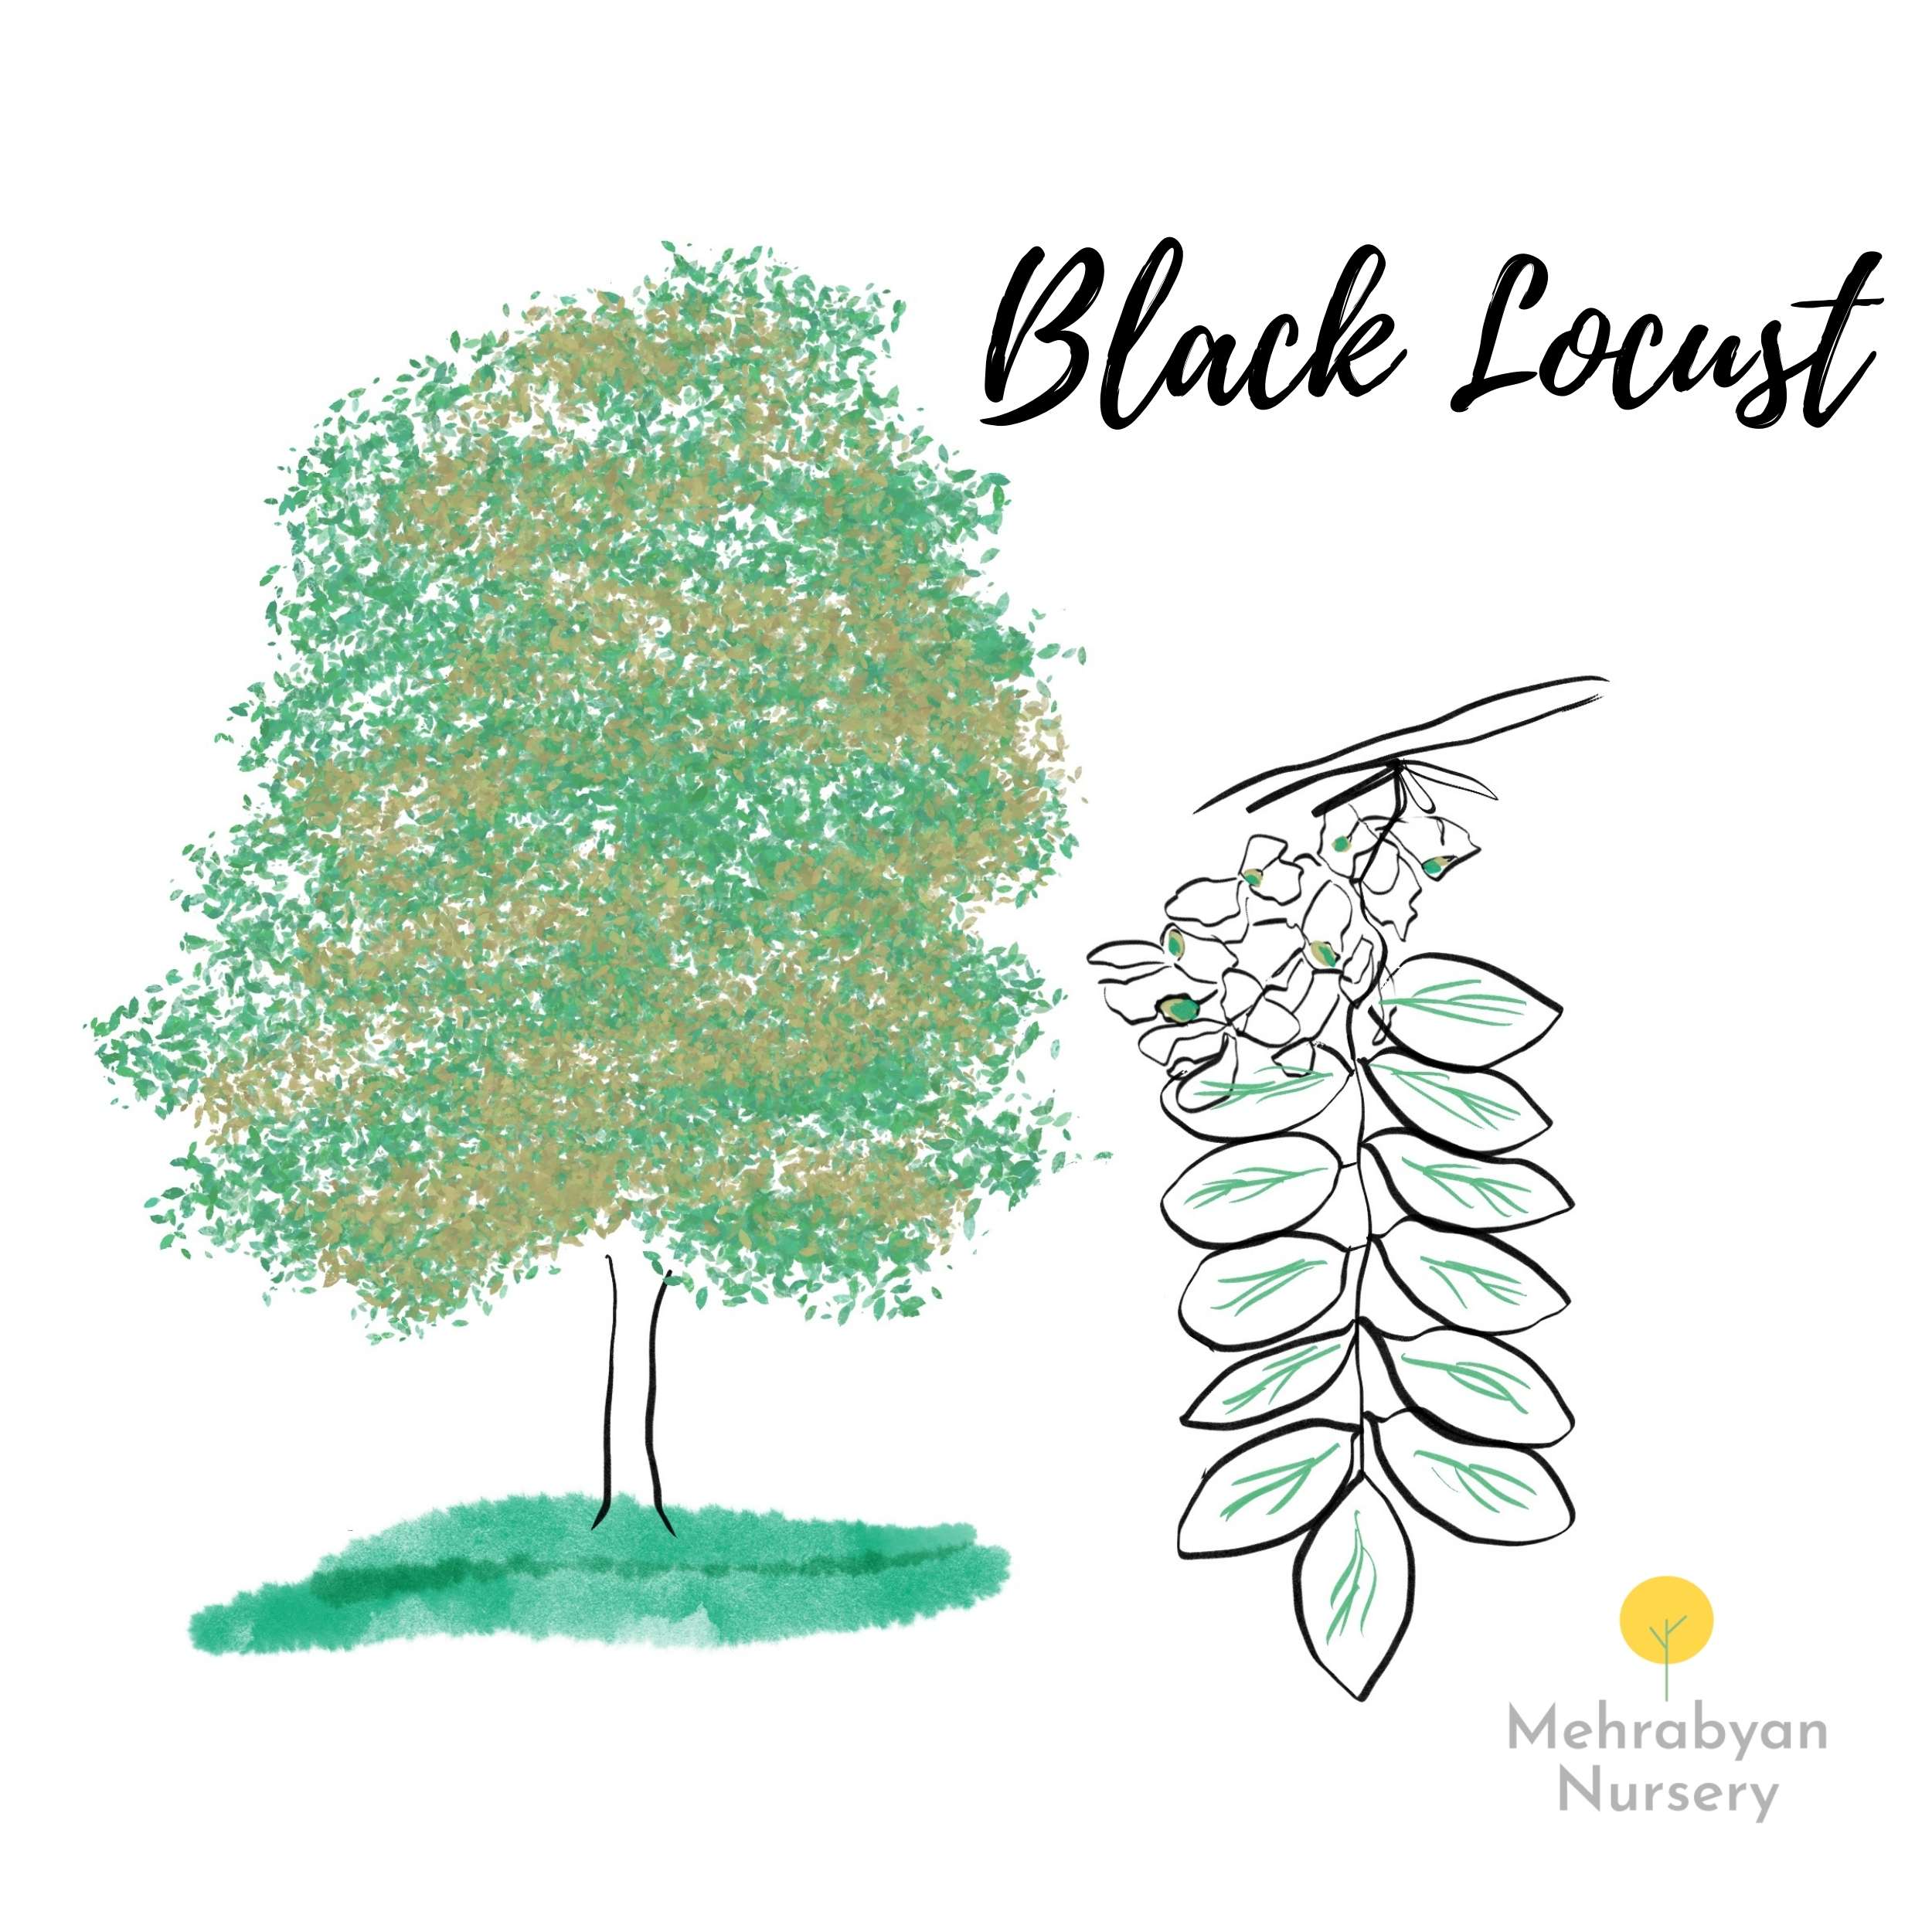 Black locust tree